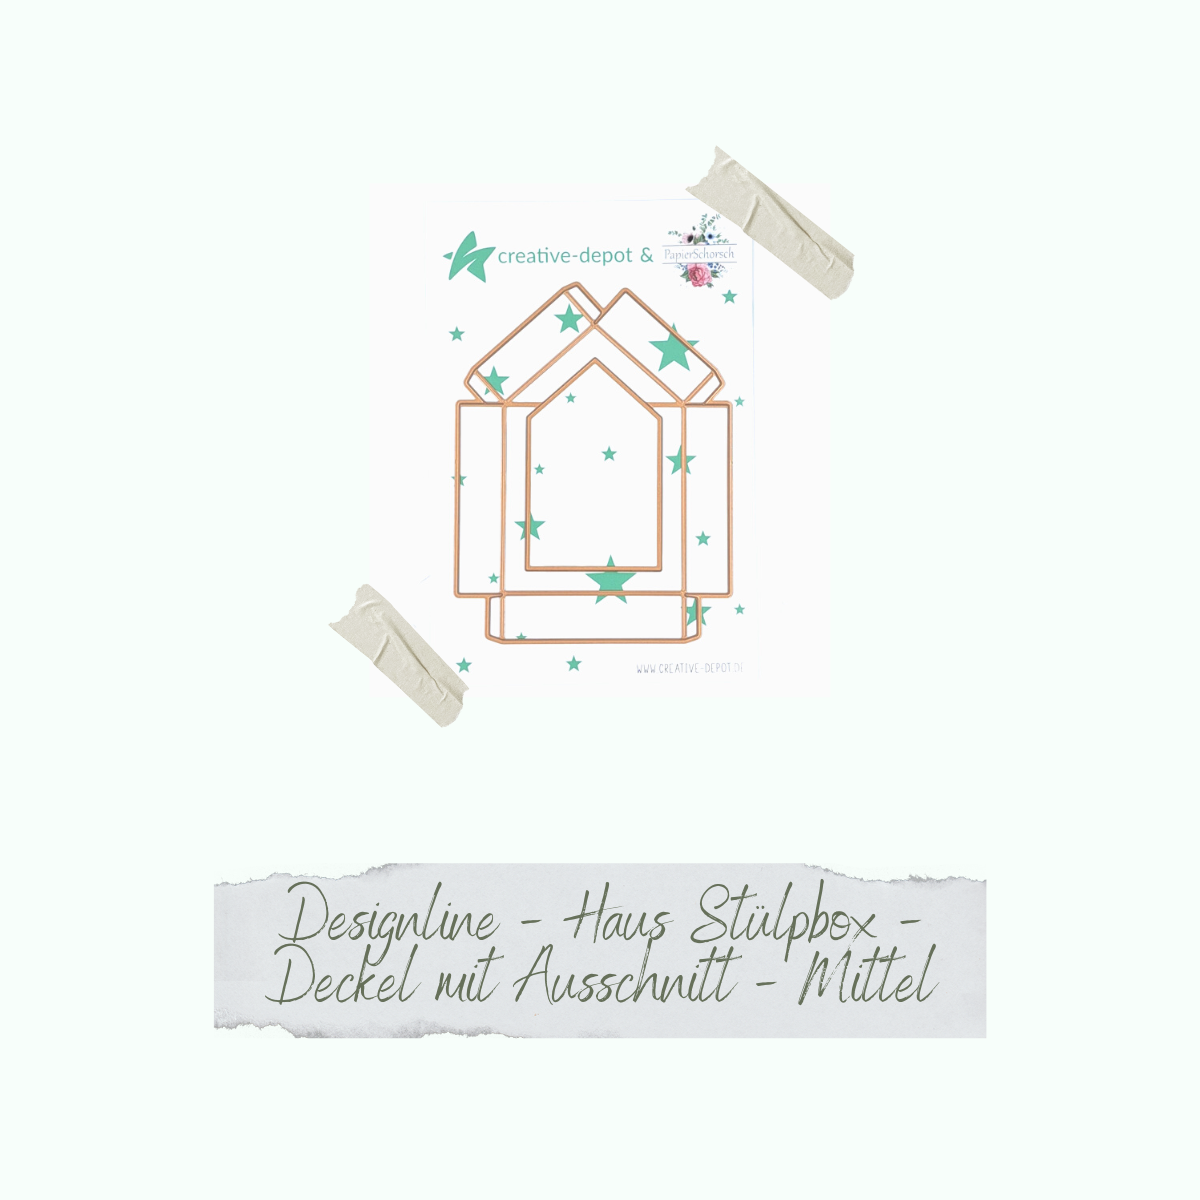 Die - Designline - Haus Stülpbox - Deckel mit Ausschnitt - mittel